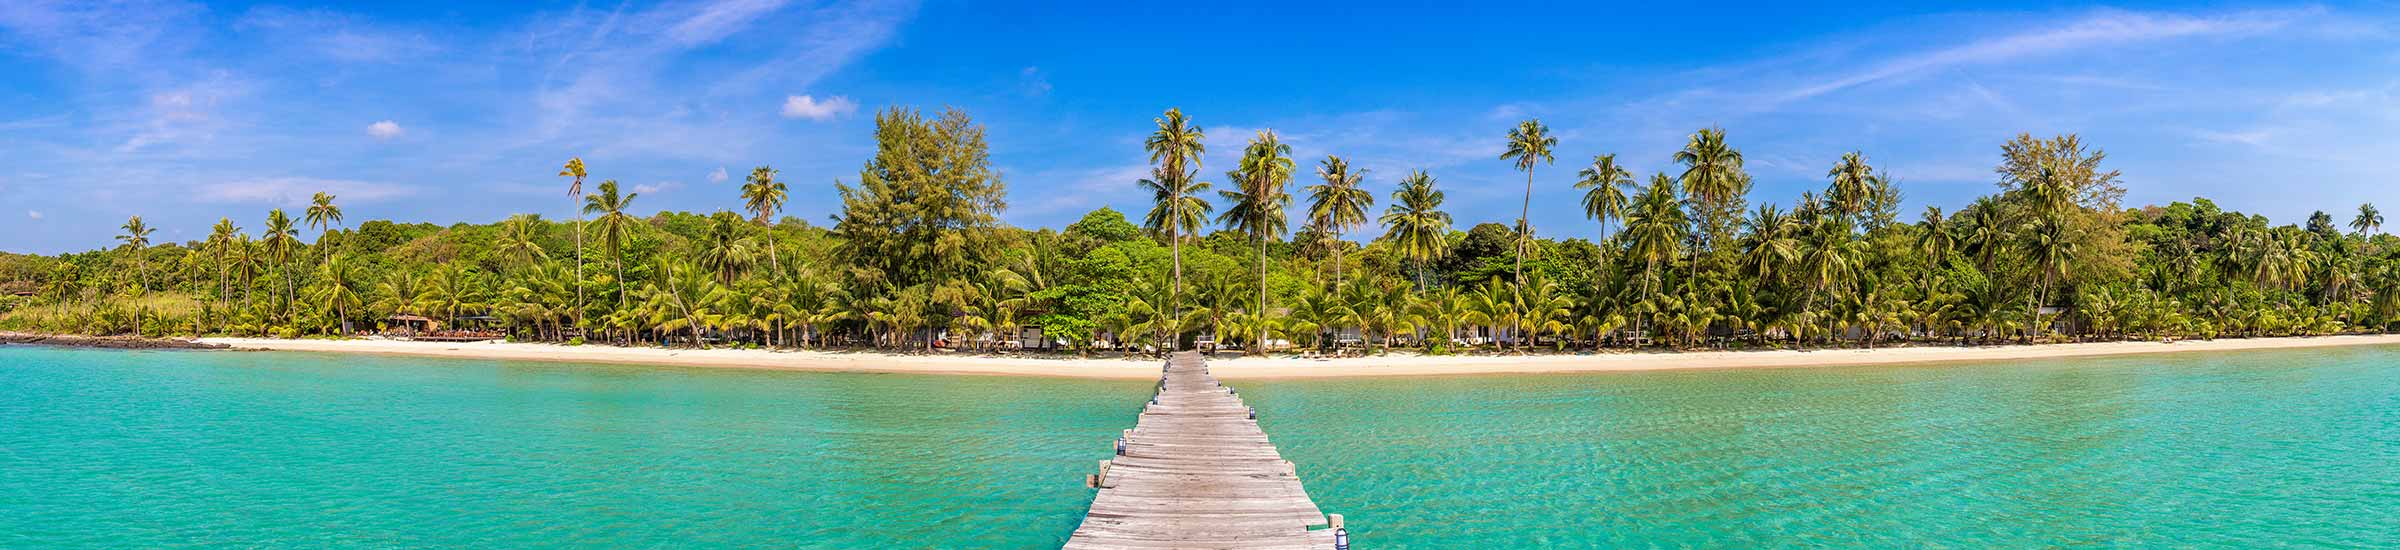 Blick auf einen Steg im Meer mit Strand und Palmen im Hintergrund